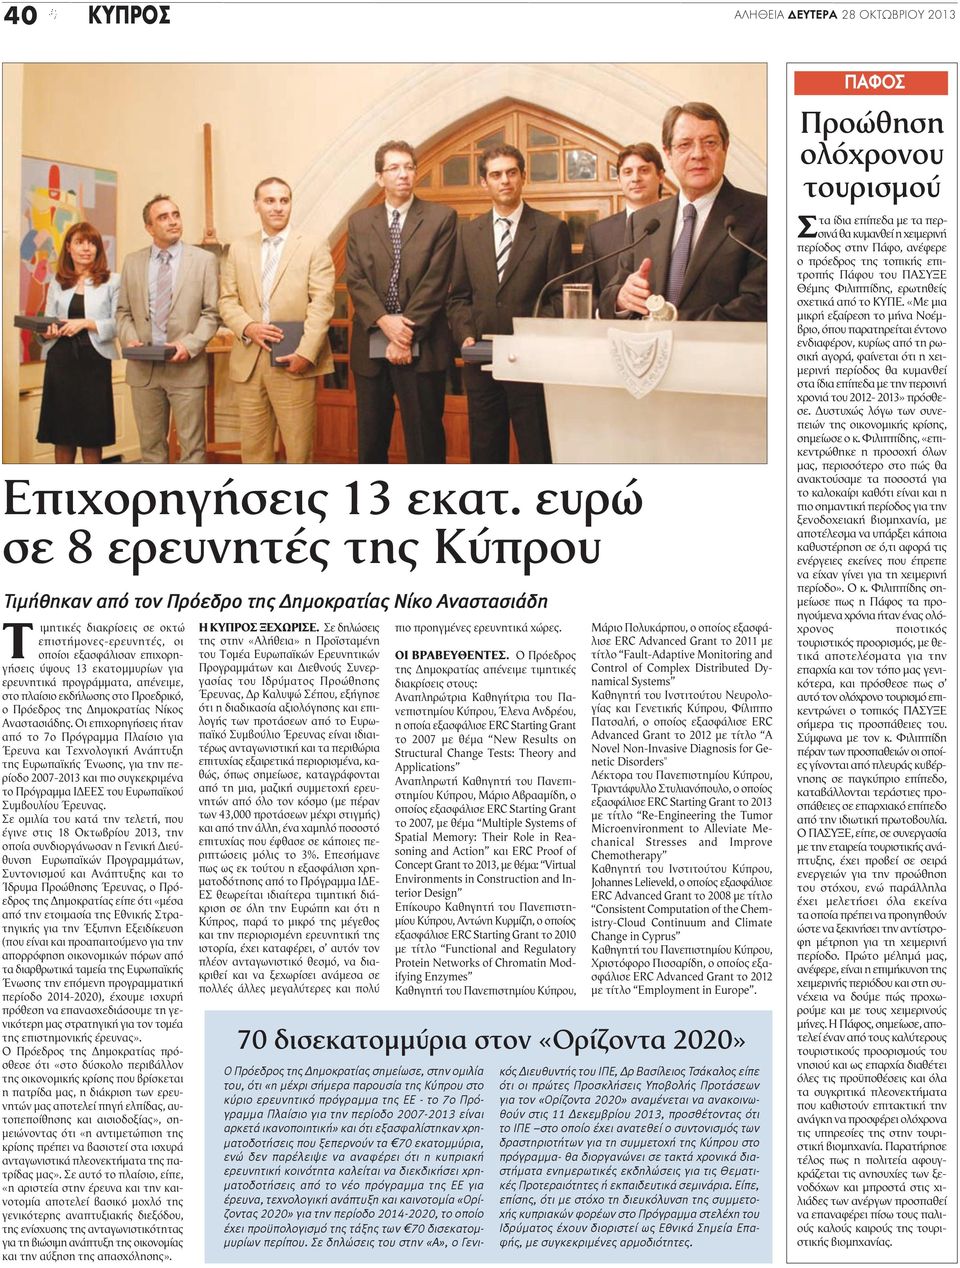 εκατομμυρίων για ερευνητικά προγράμματα, απένειμε, στο πλαίσιο εκδήλωσης στο Προεδρικό, ο Πρόεδρος της Δημοκρατίας Νίκος Αναστασιάδης.